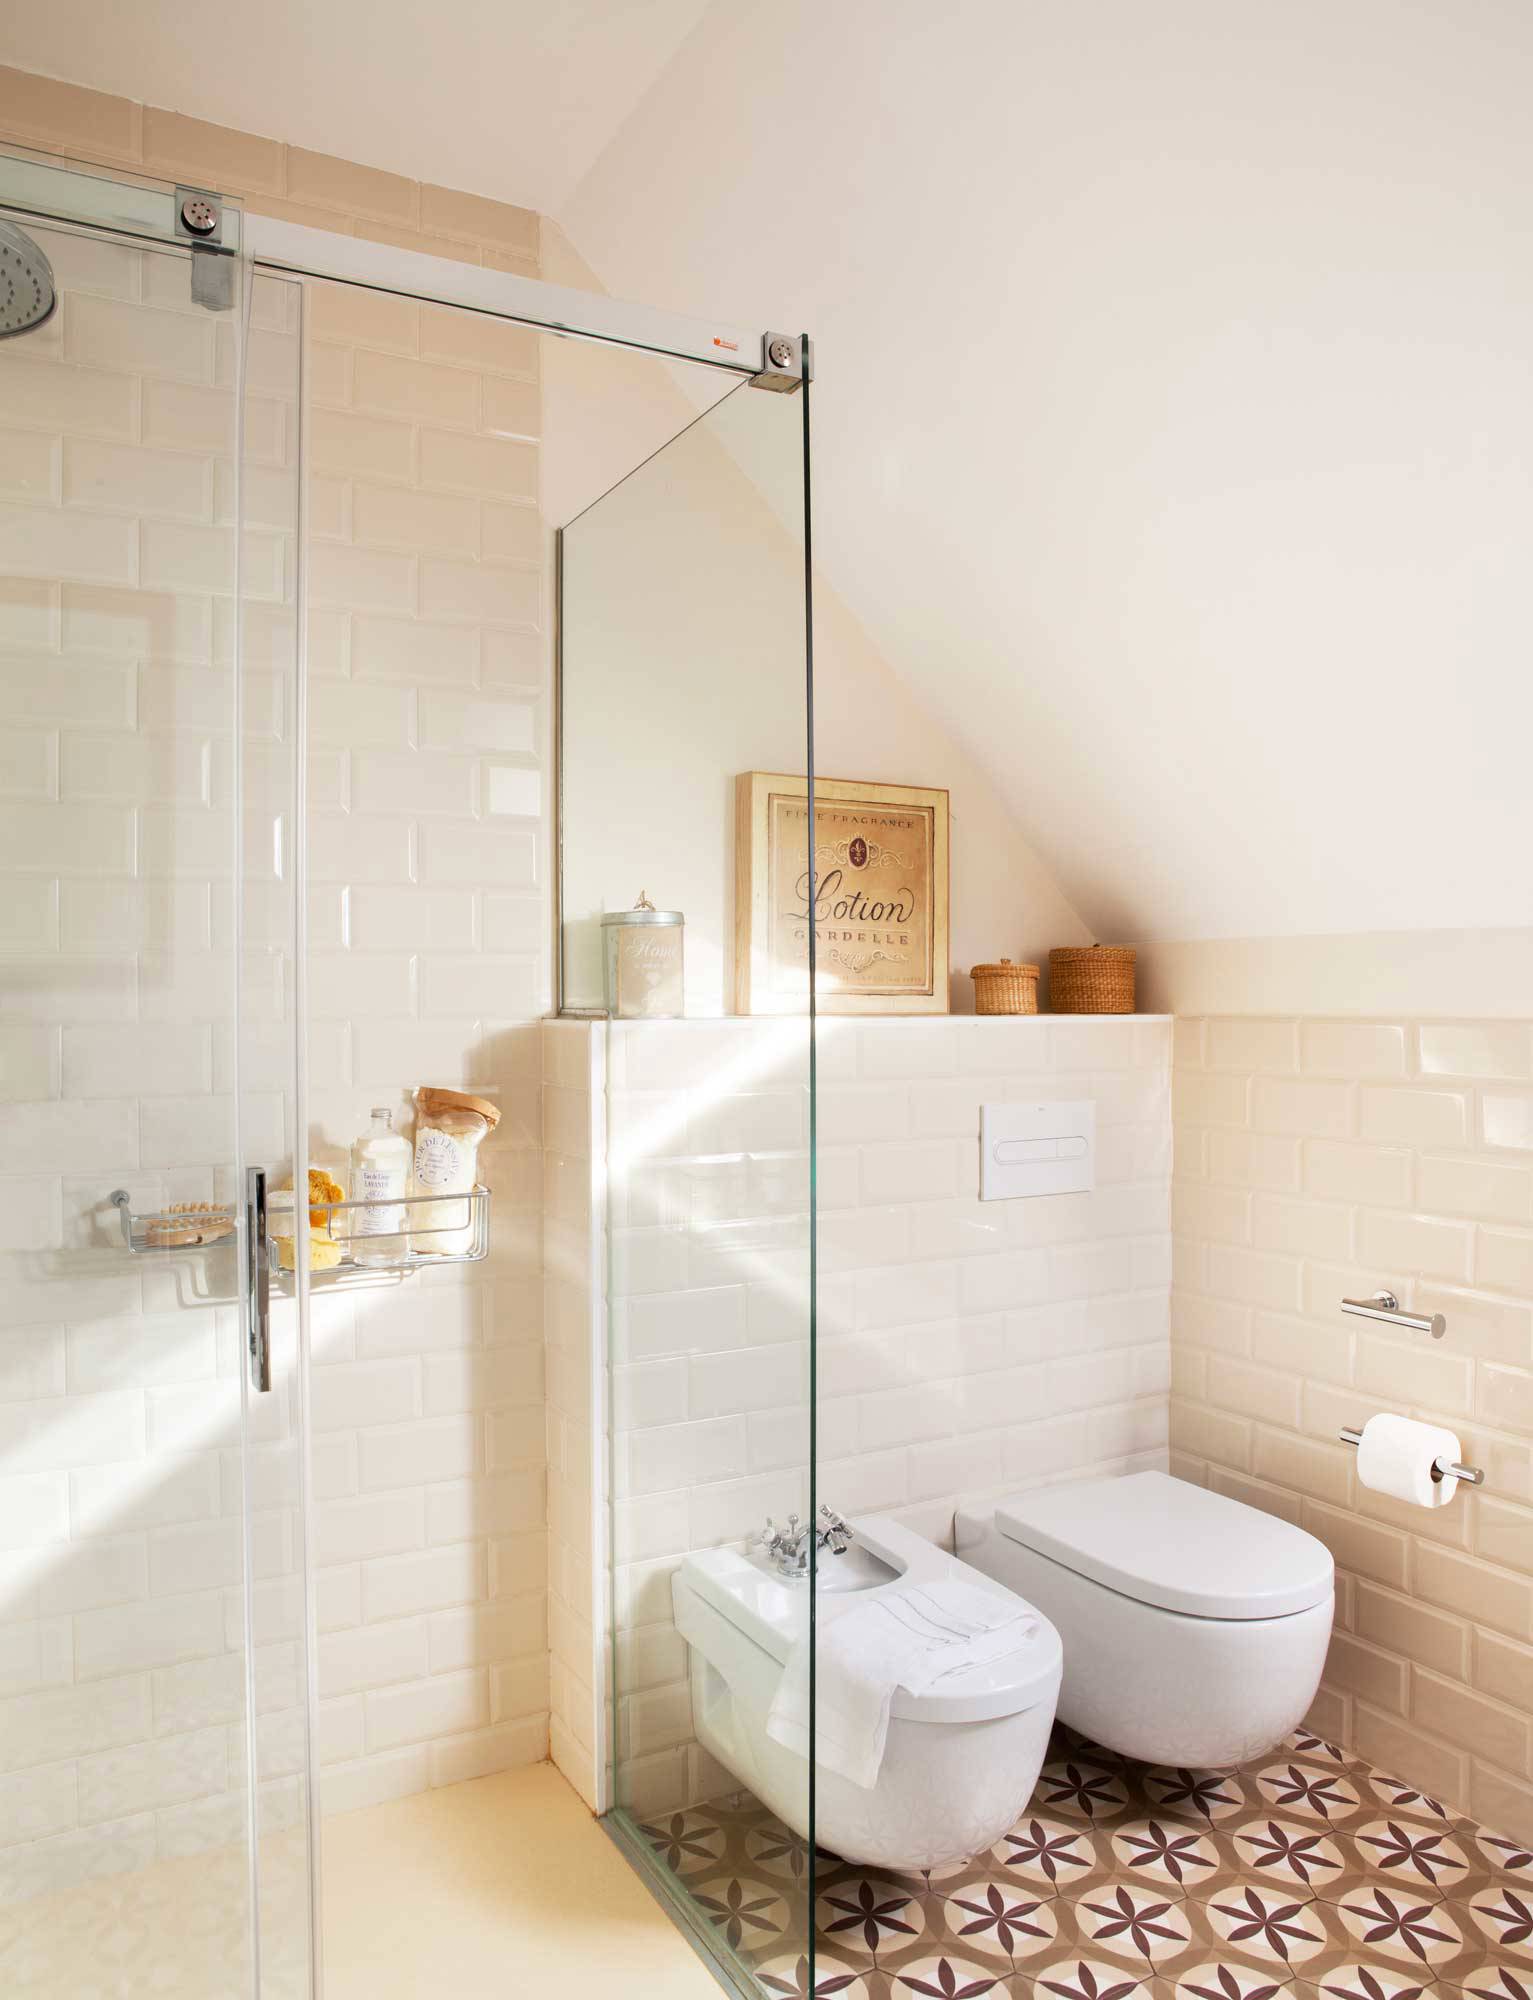 Baño con ducha y estantería de obra revestida de azulejos.